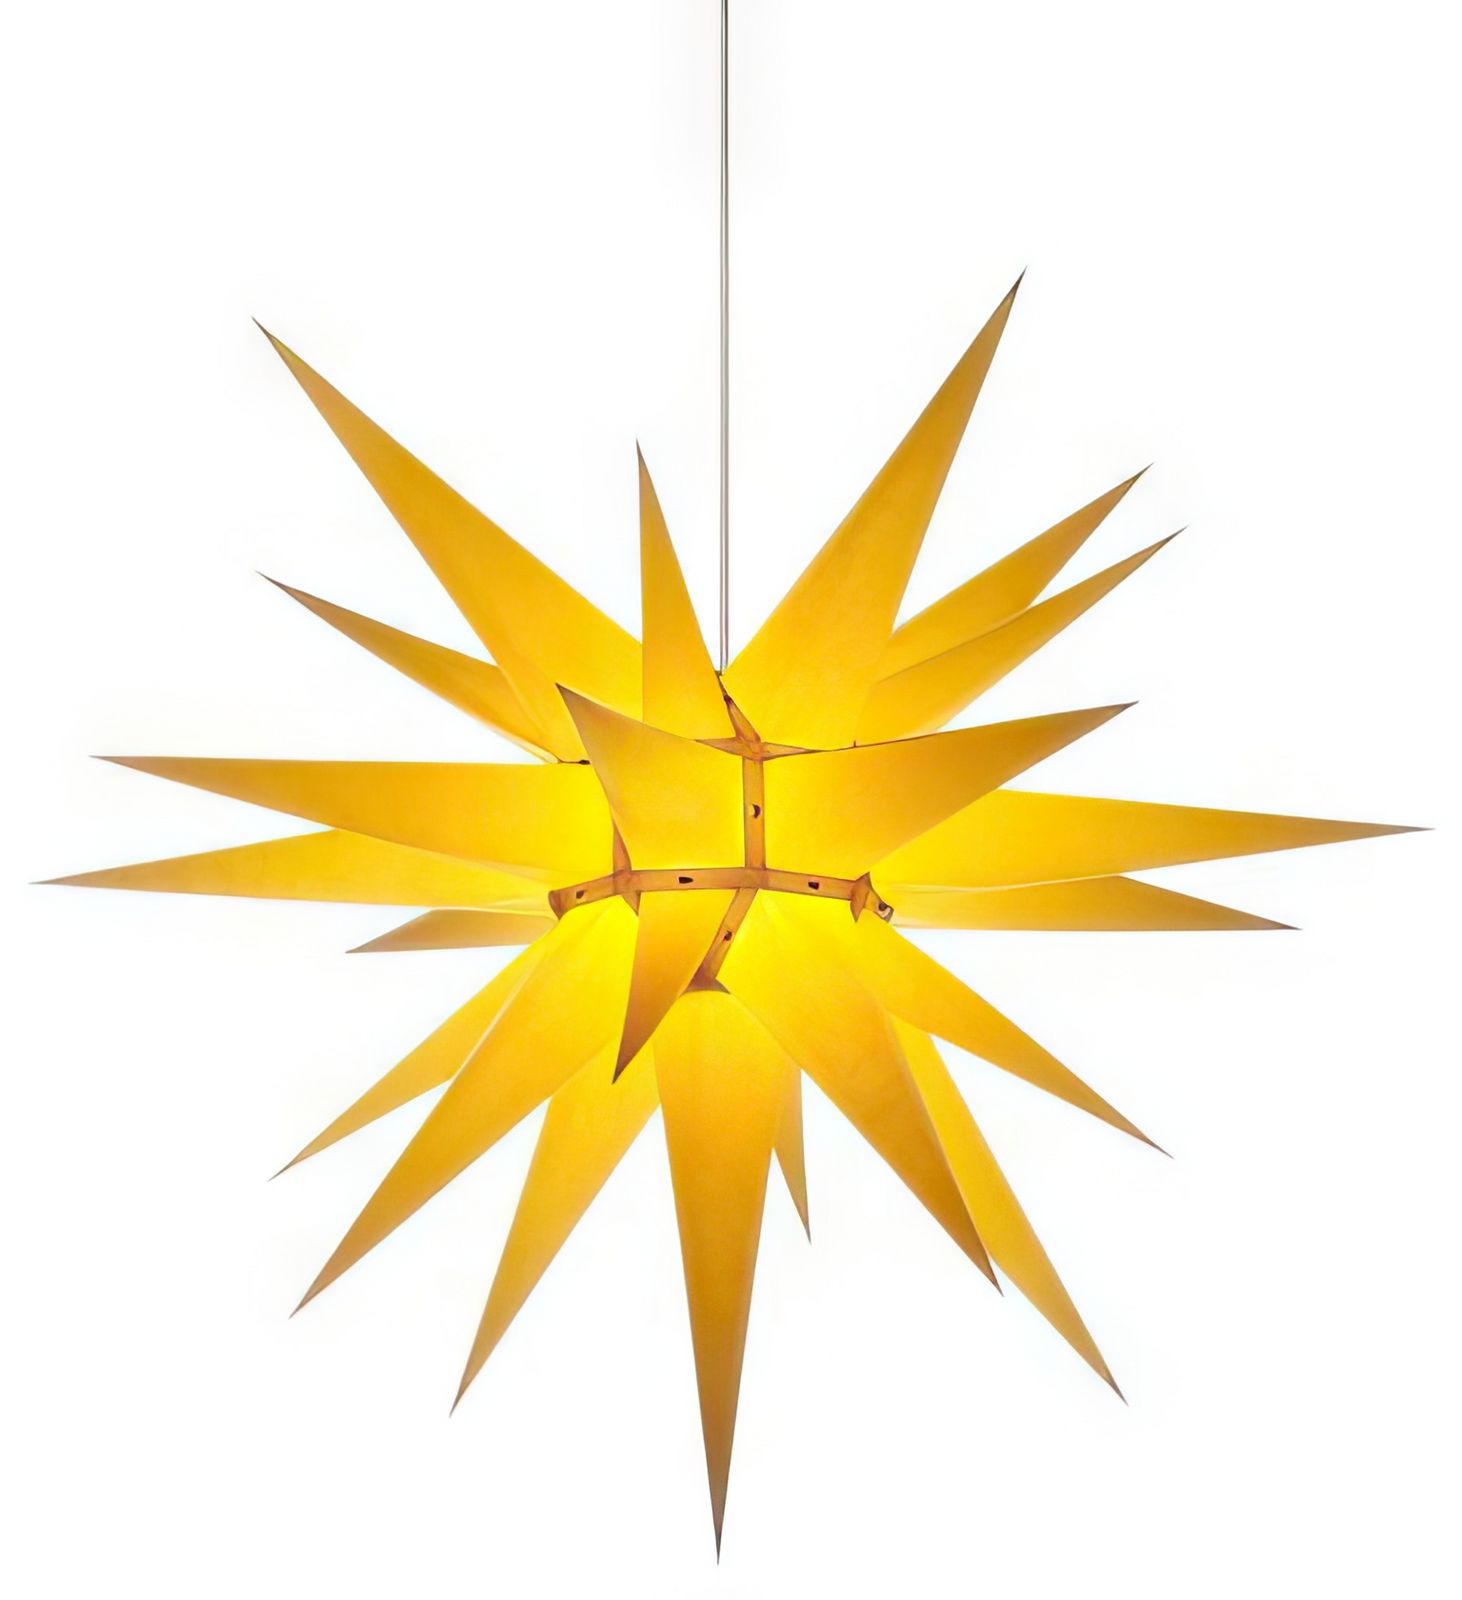 Herrnhuter Stern i7 (Bausatz) Ø 70 cm Papierstern - gelb Wunderschöner und sehr hochwertiger Weihnachtsstern für Innen/Indoor - das Original mit 25 Zacken